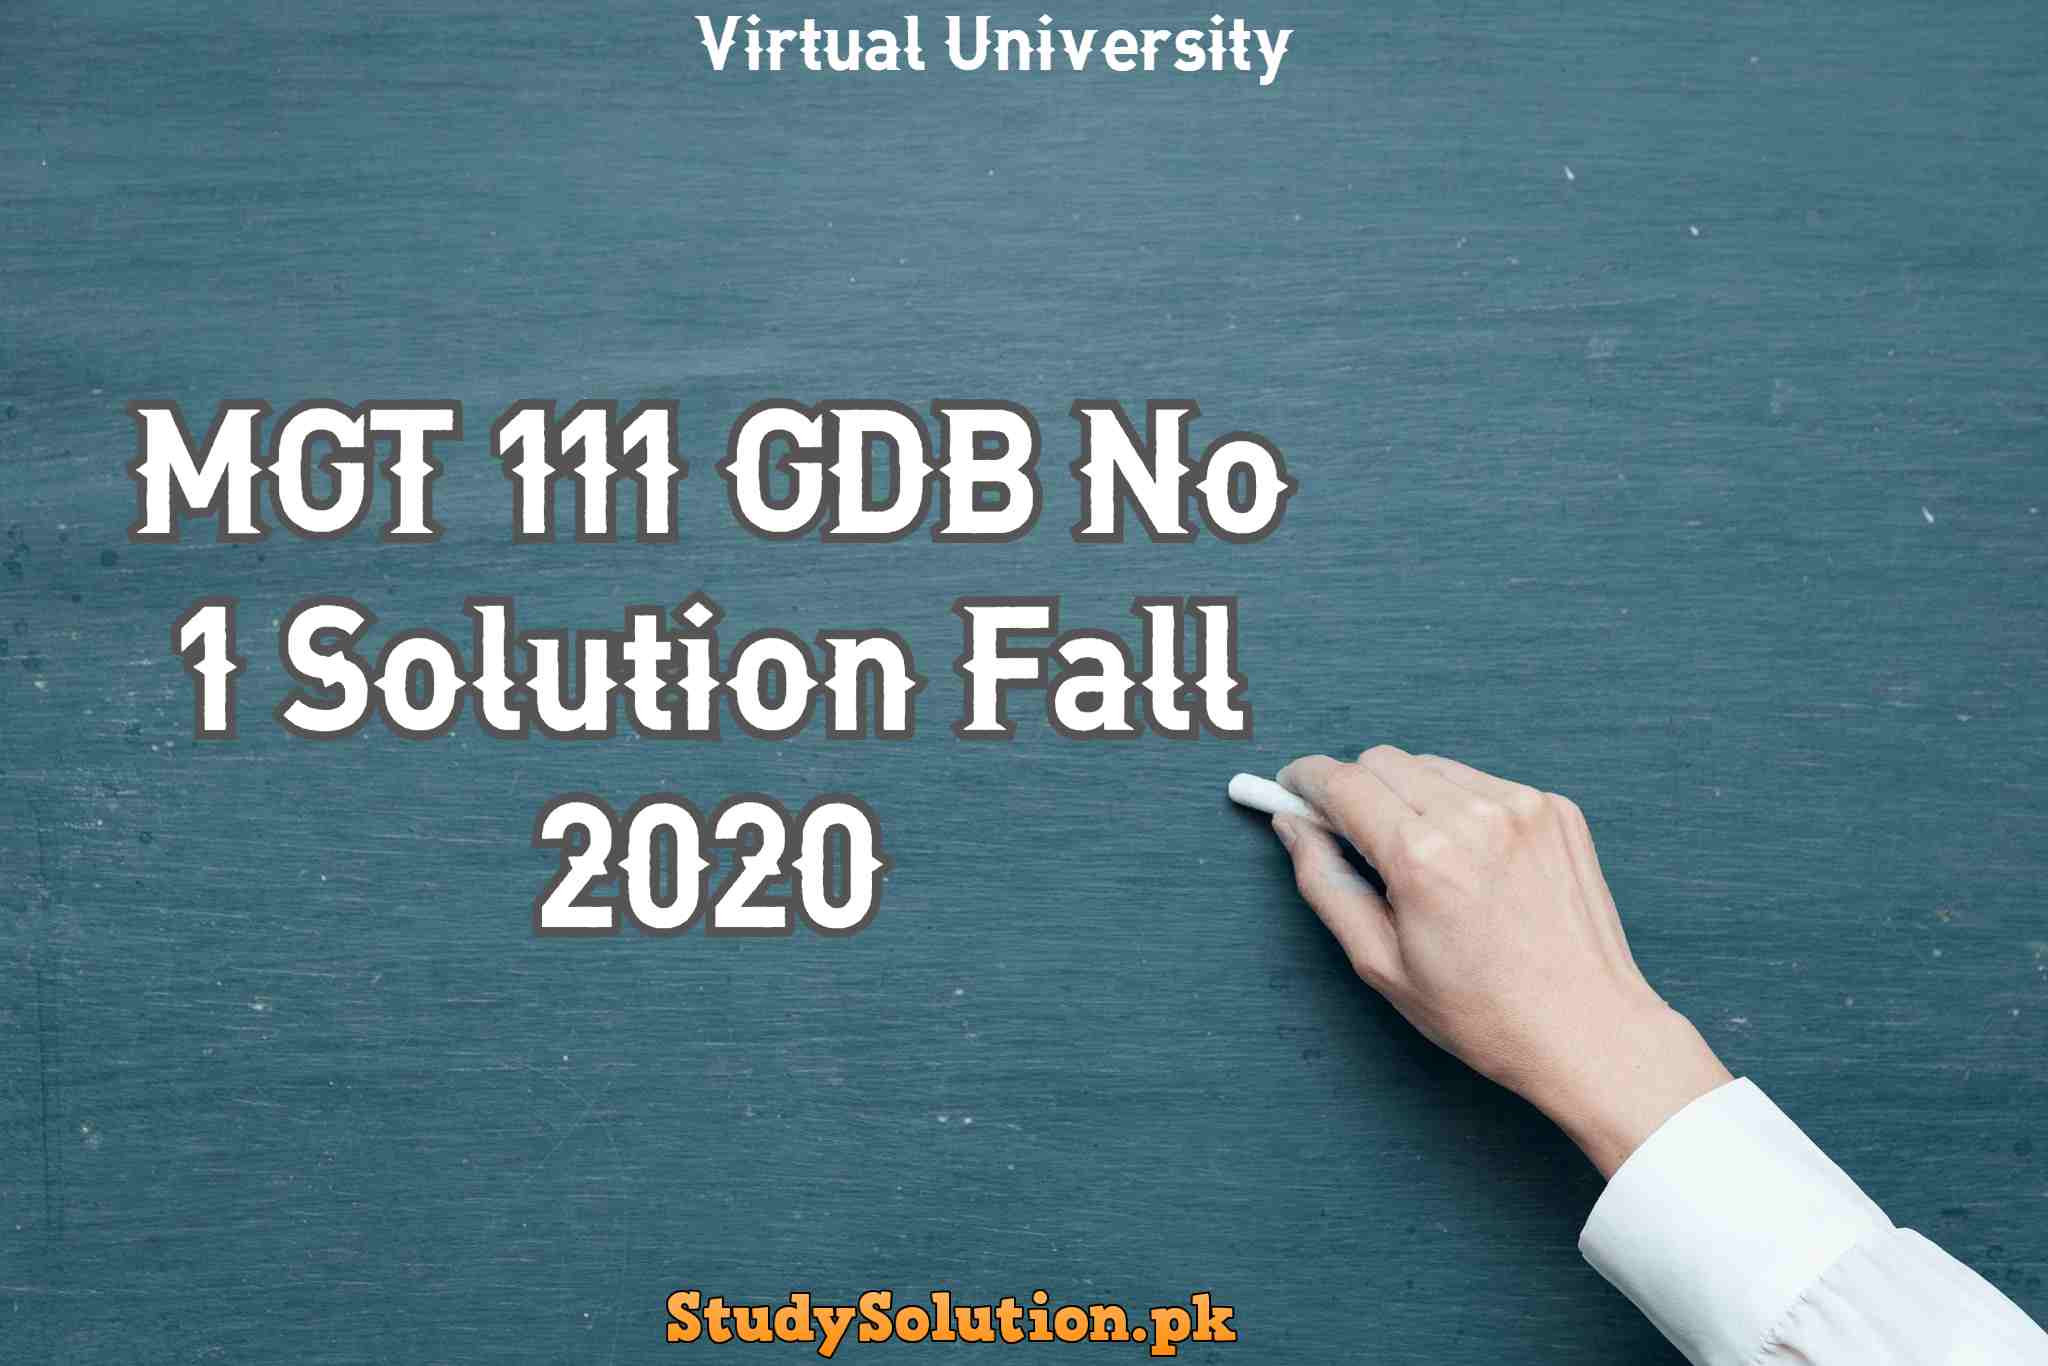 MGT 111 GDB No 1 Solution Fall 2020